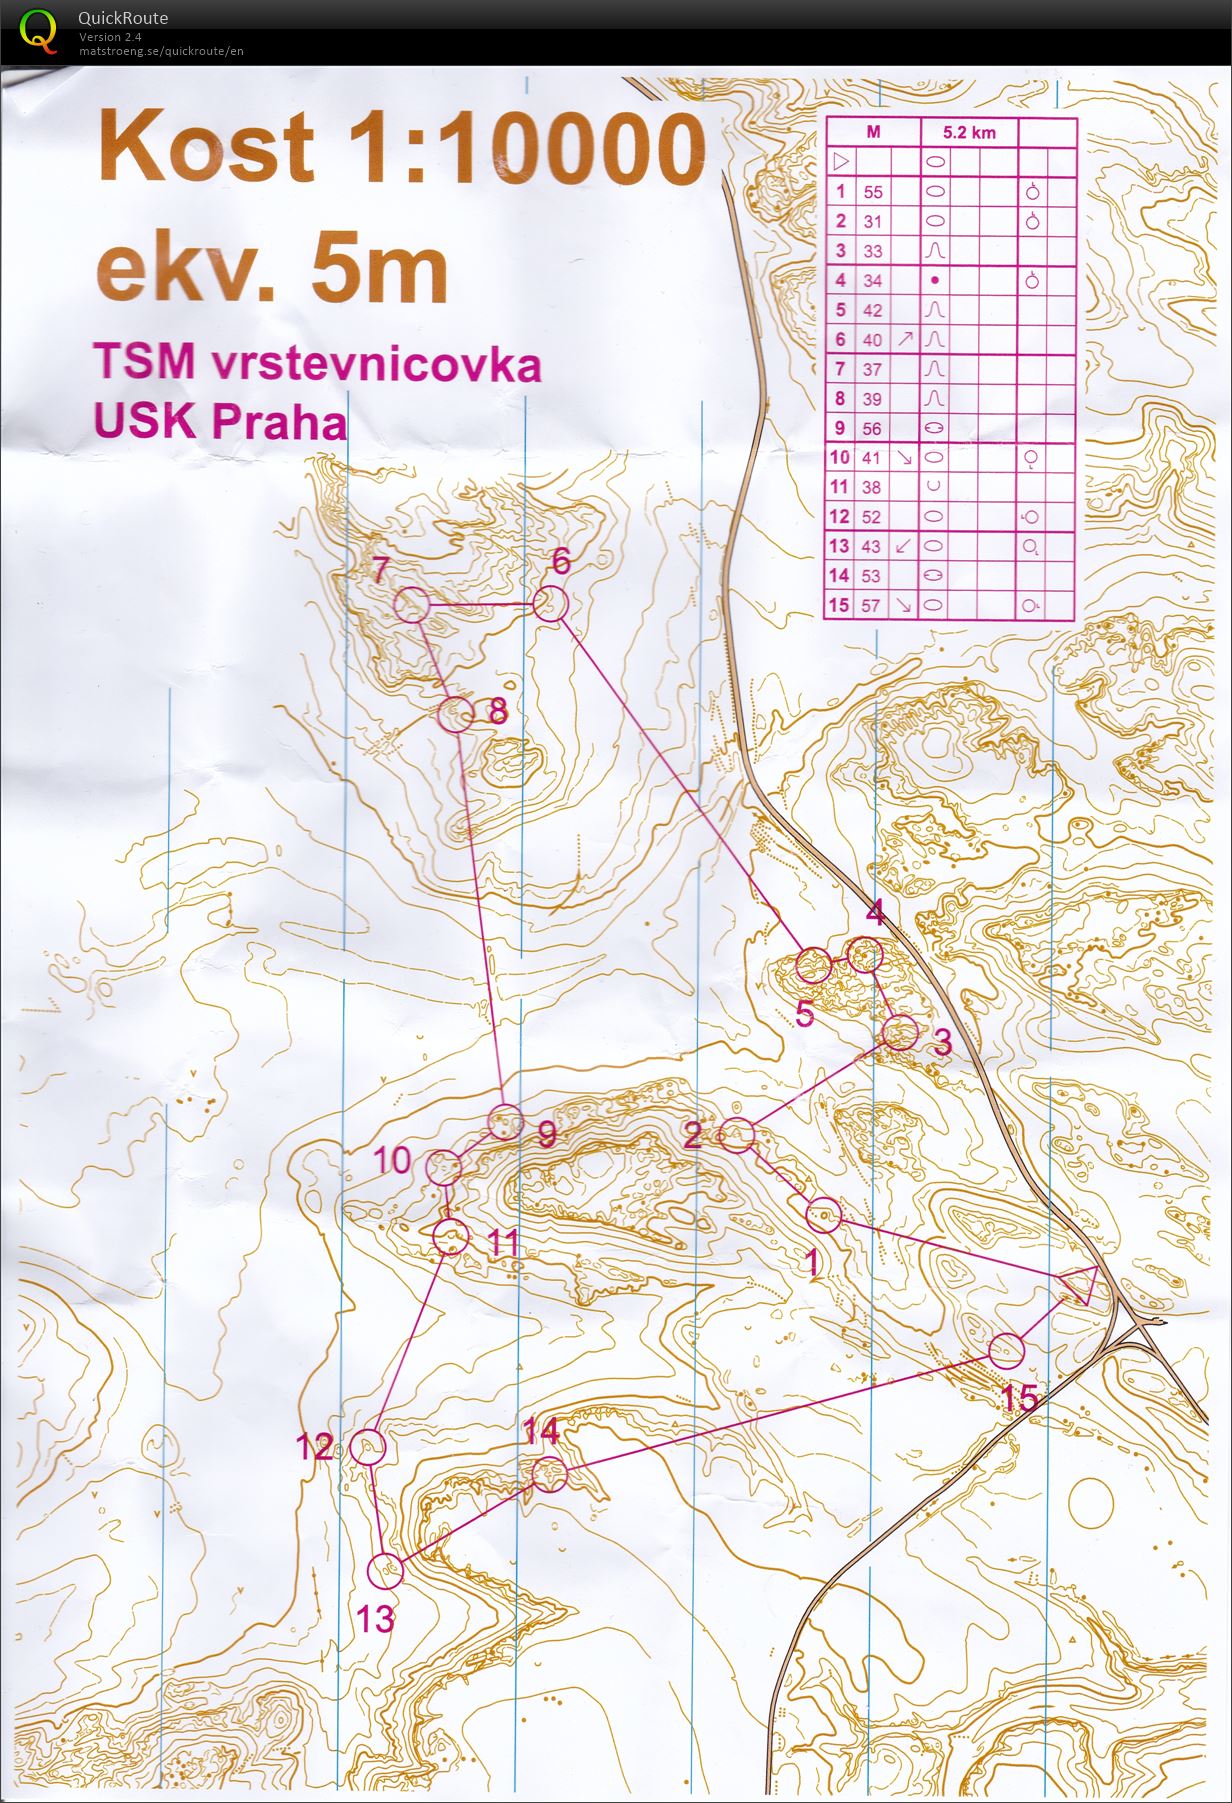 TSM Vrstevnicovka (02-05-2021)